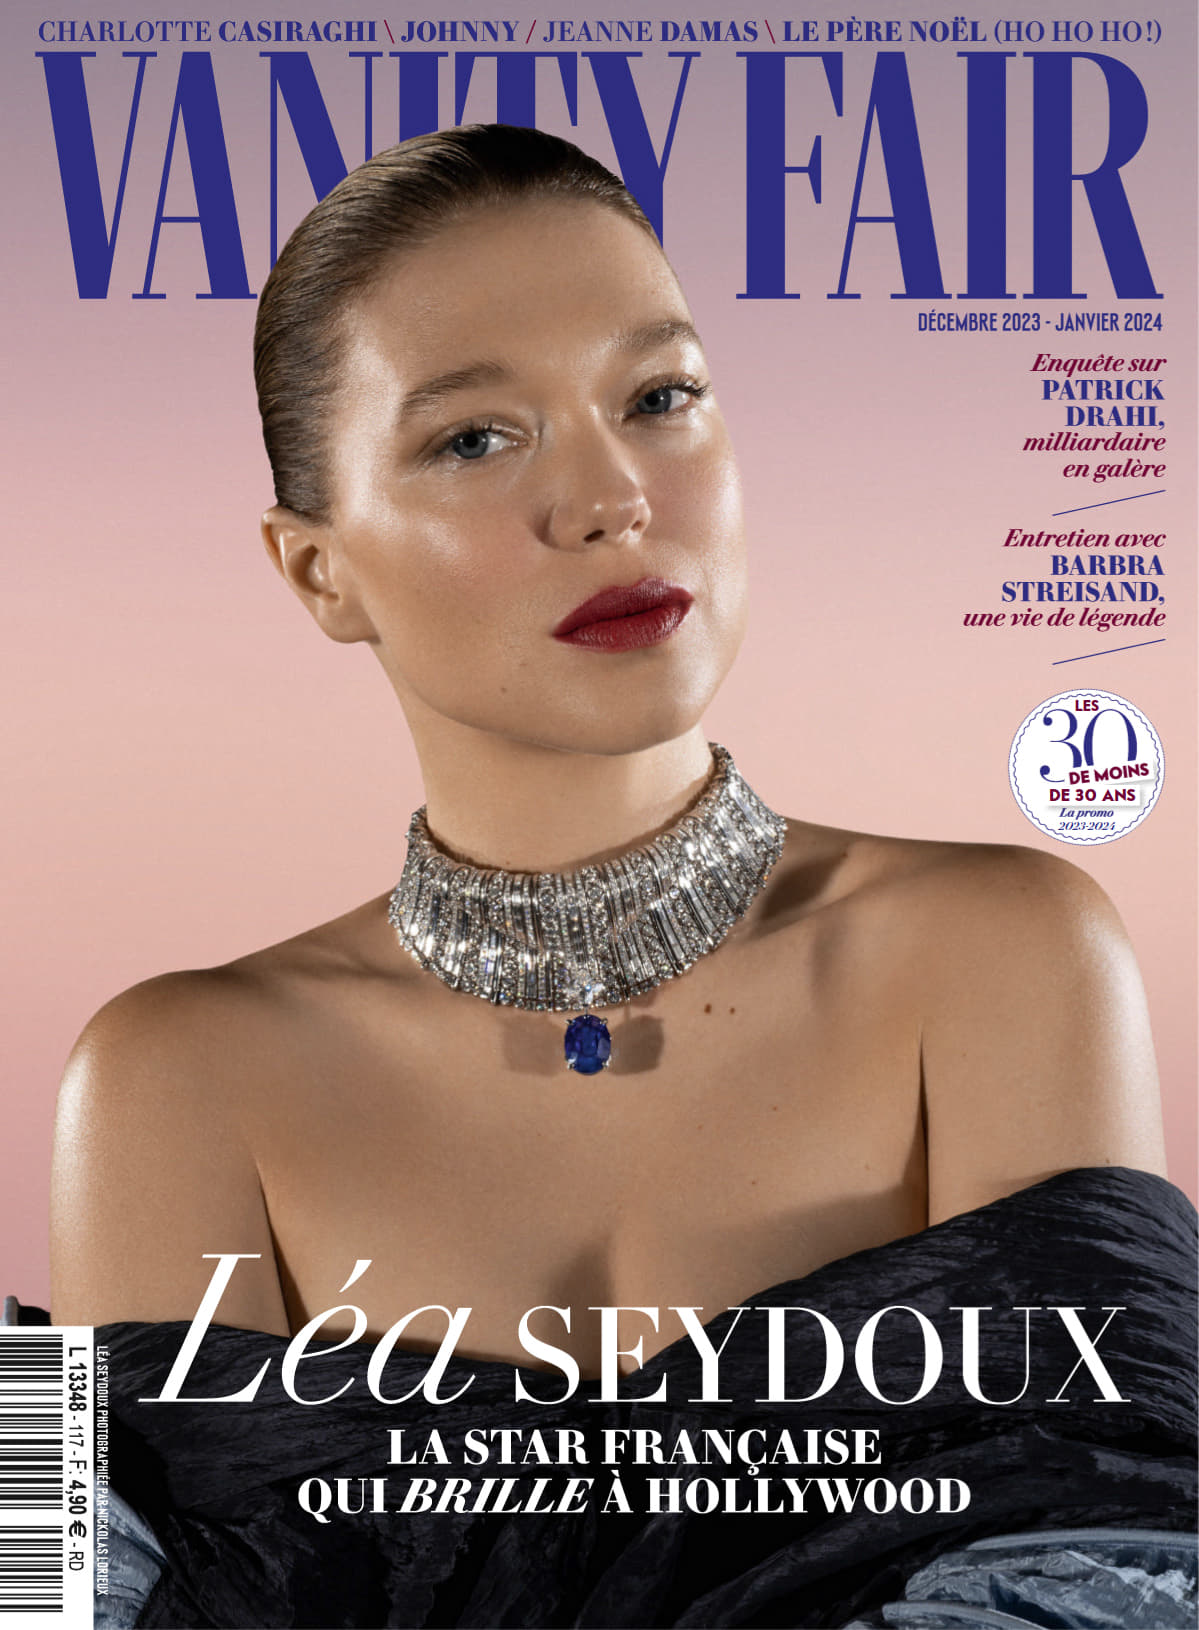 Vanity Fair France – Decembre 2023 – Janvier 2024